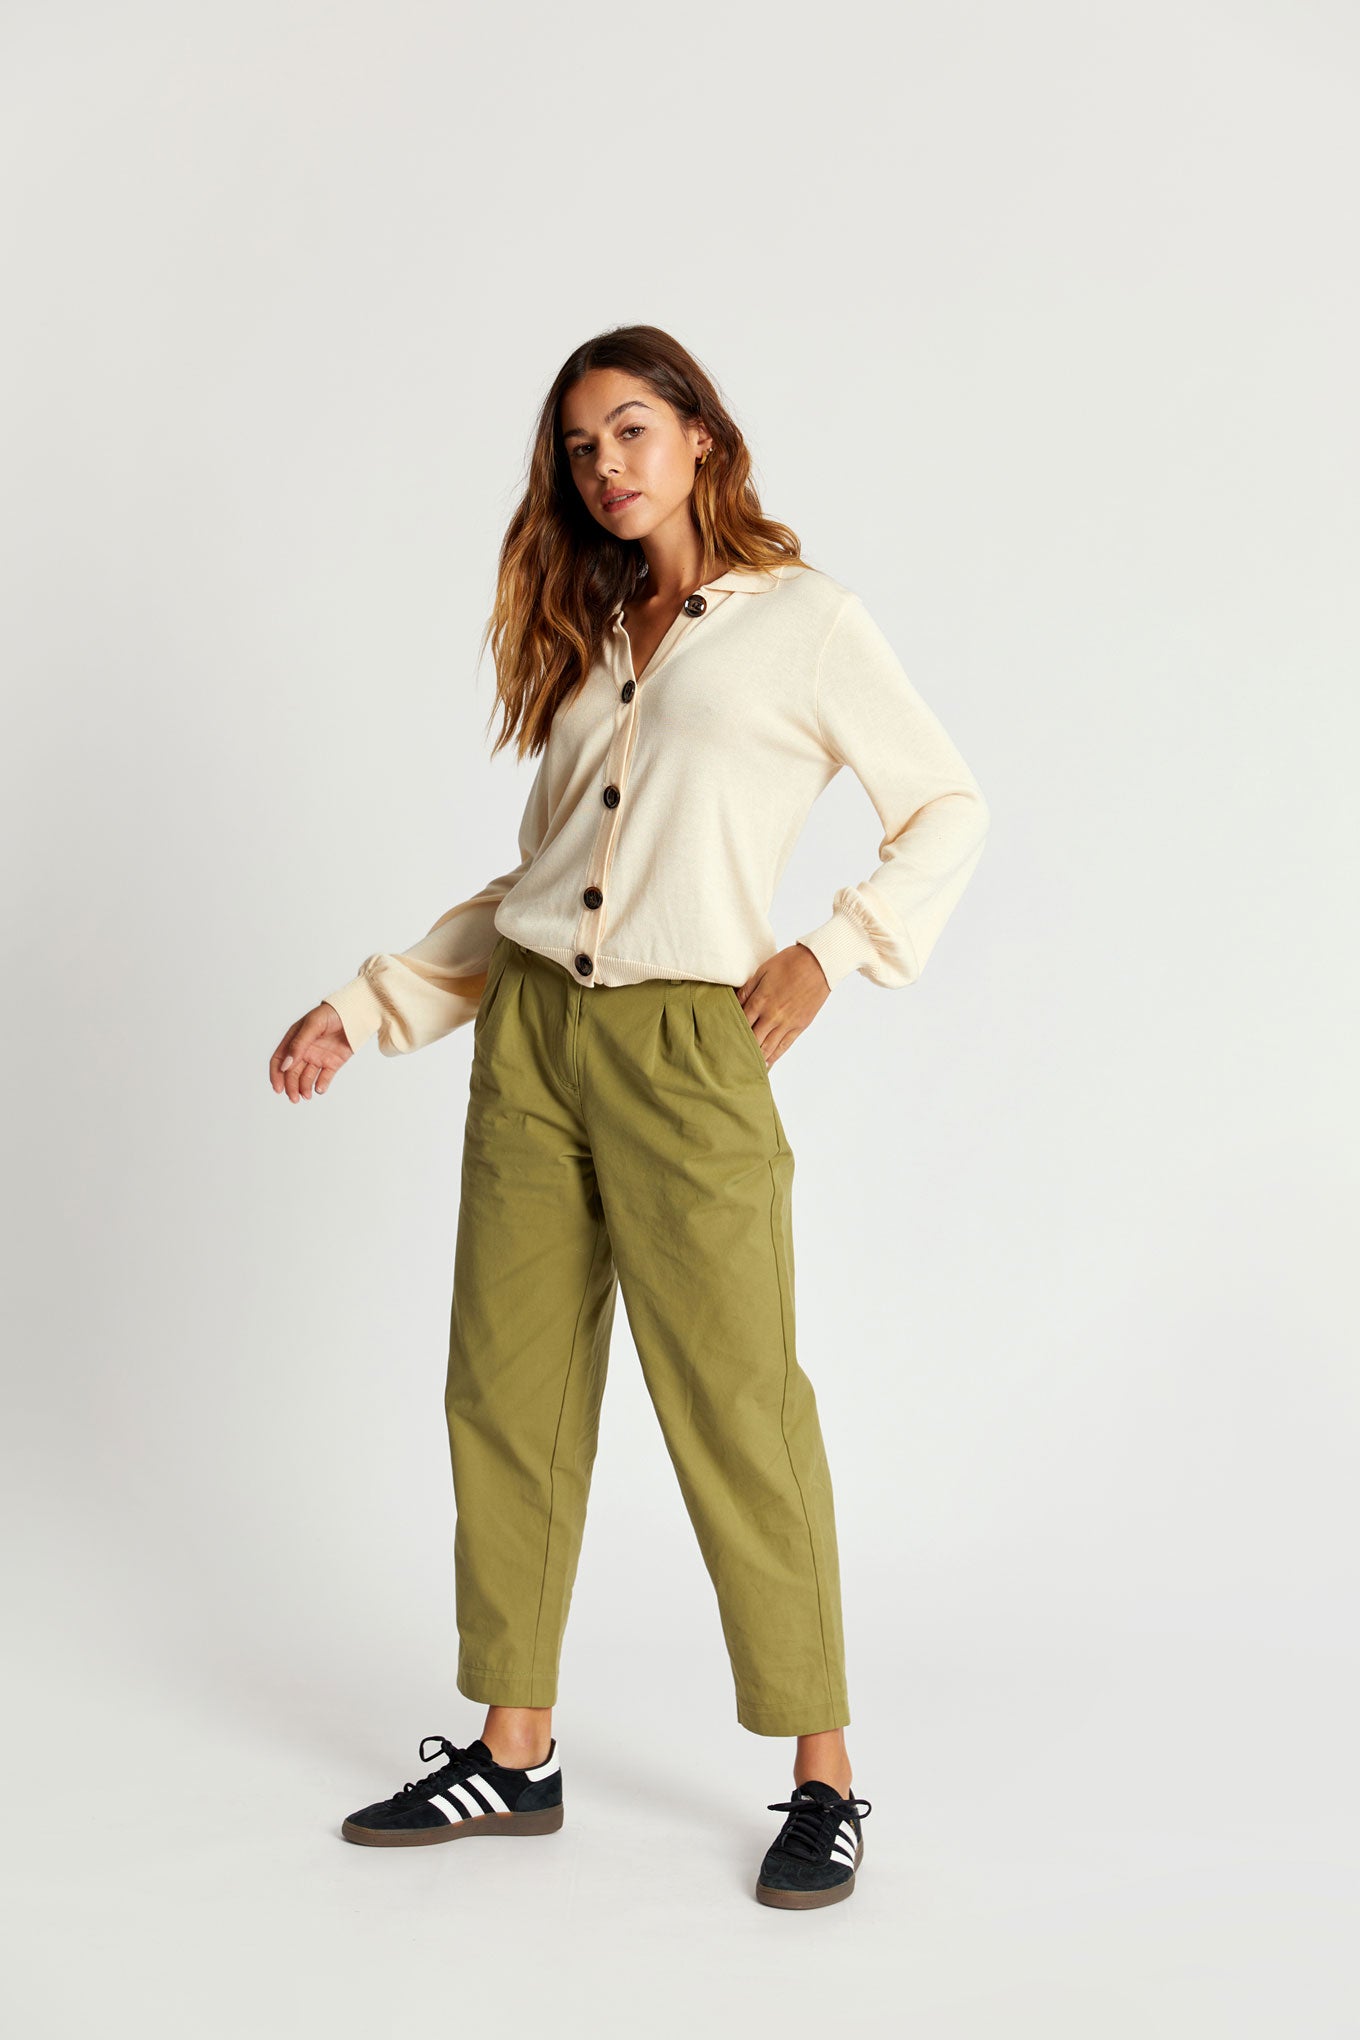 OLIA Organic Cotton Trouser - Khaki Green, SIZE 2 / UK 10 / EUR 38